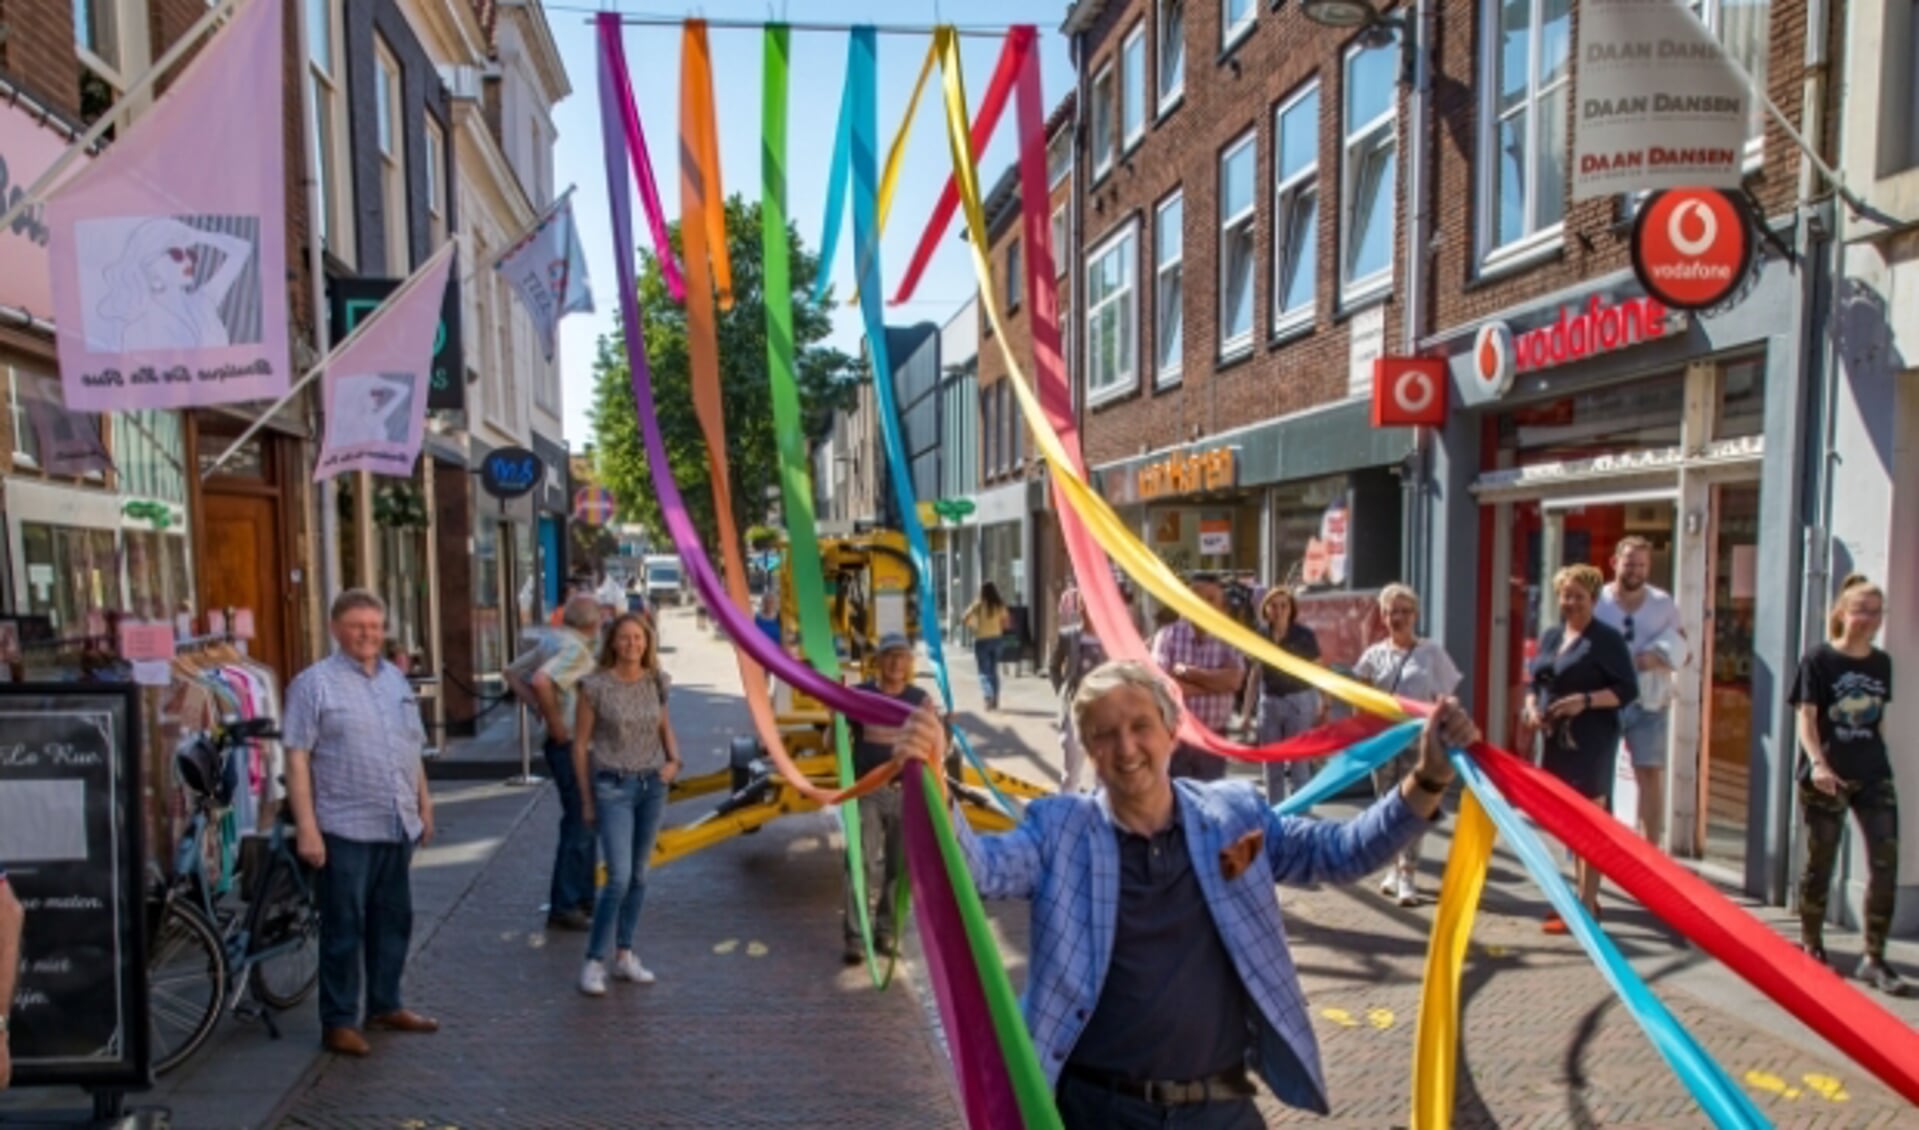 Burgemeester Hans Beenakker bij het aanbrengen van linten in de binnenstad, georganiseerd door Hart van Tiel. 